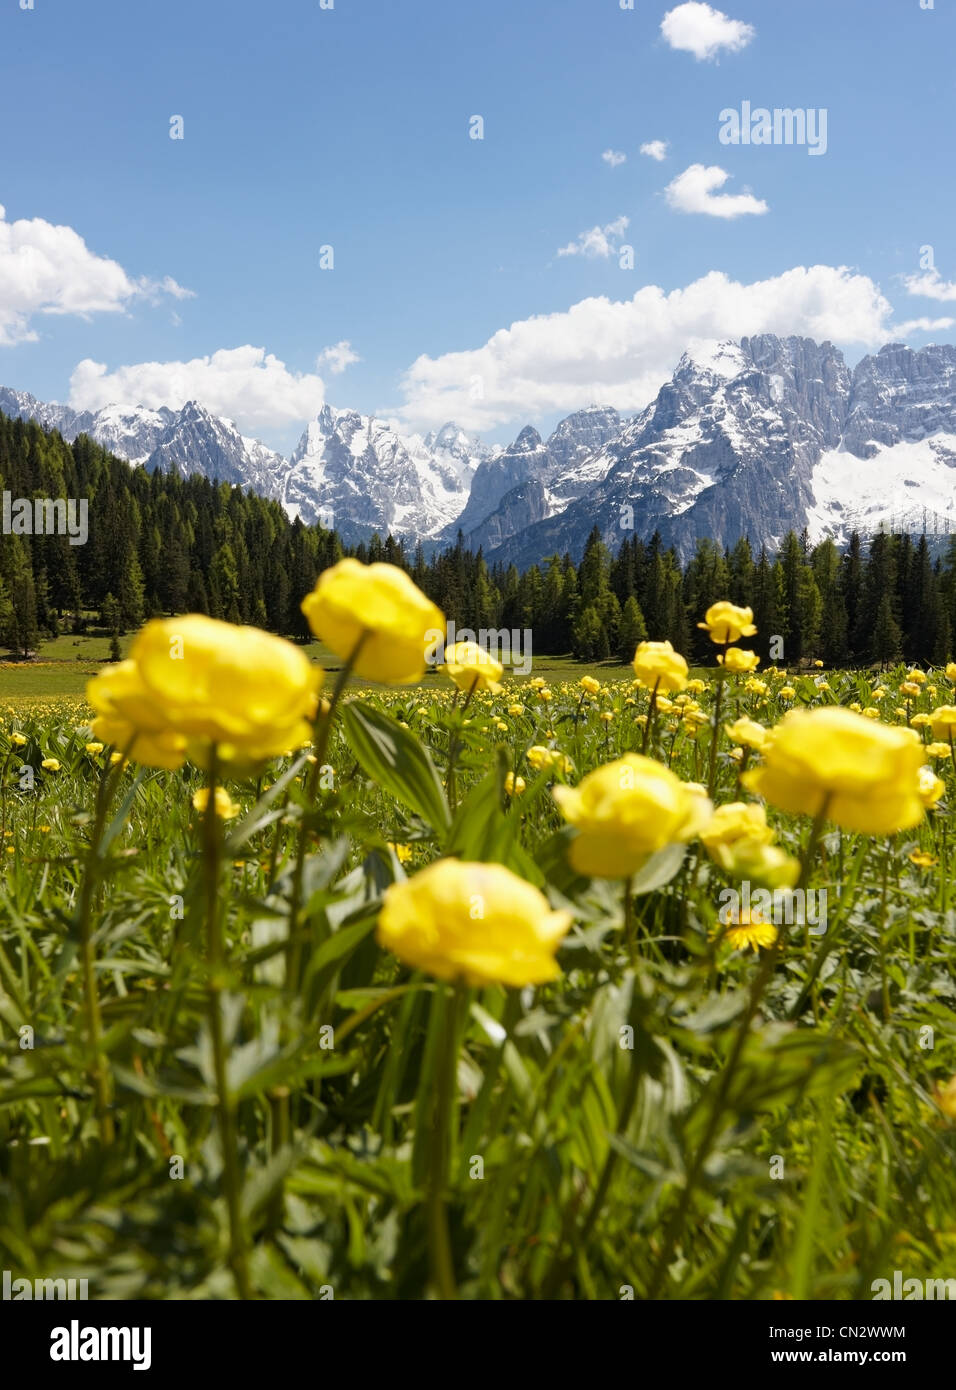 Paysage de montagne avec des fleurs jaunes, Cortina d'Ampezzo, Italie Banque D'Images